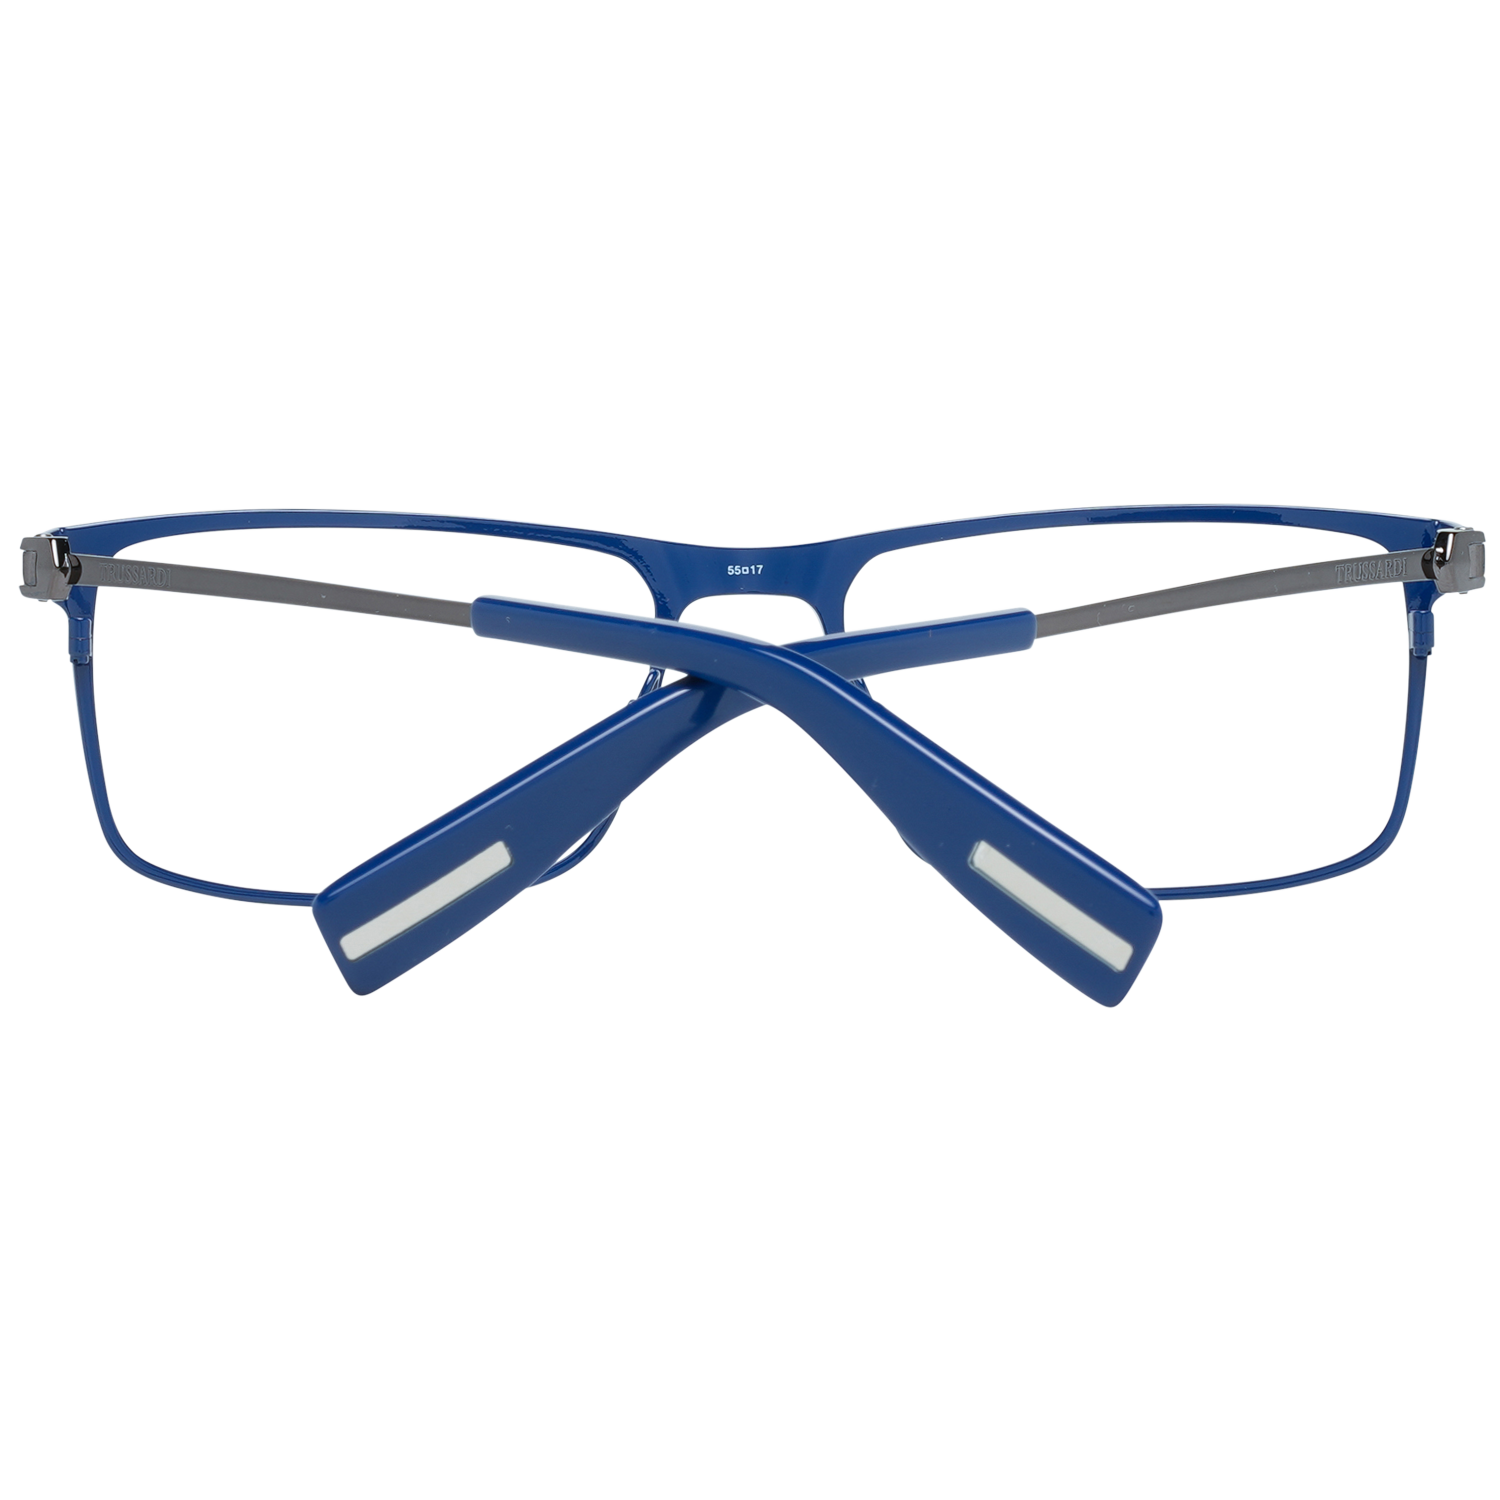 Trussardi Frames Trussardi Glasses Frames VTR024 08P6 55mm Eyeglasses Eyewear UK USA Australia 